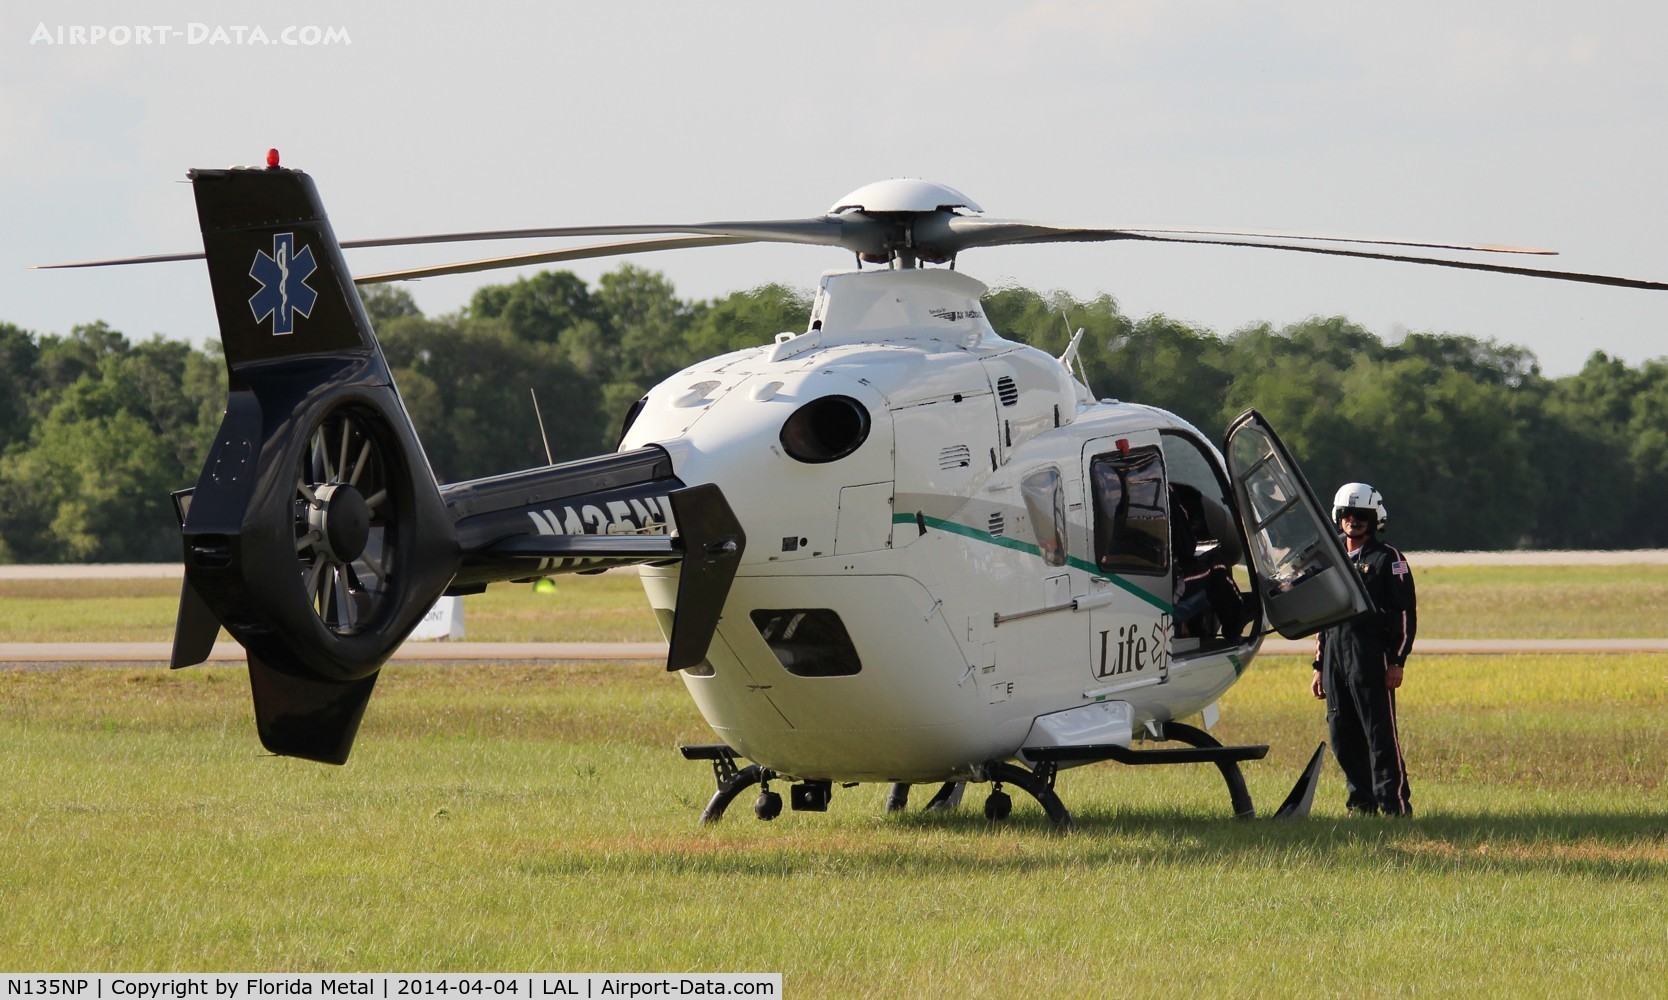 N135NP, 1998 Eurocopter EC-135T-1 C/N 0068, Life Net Tampa